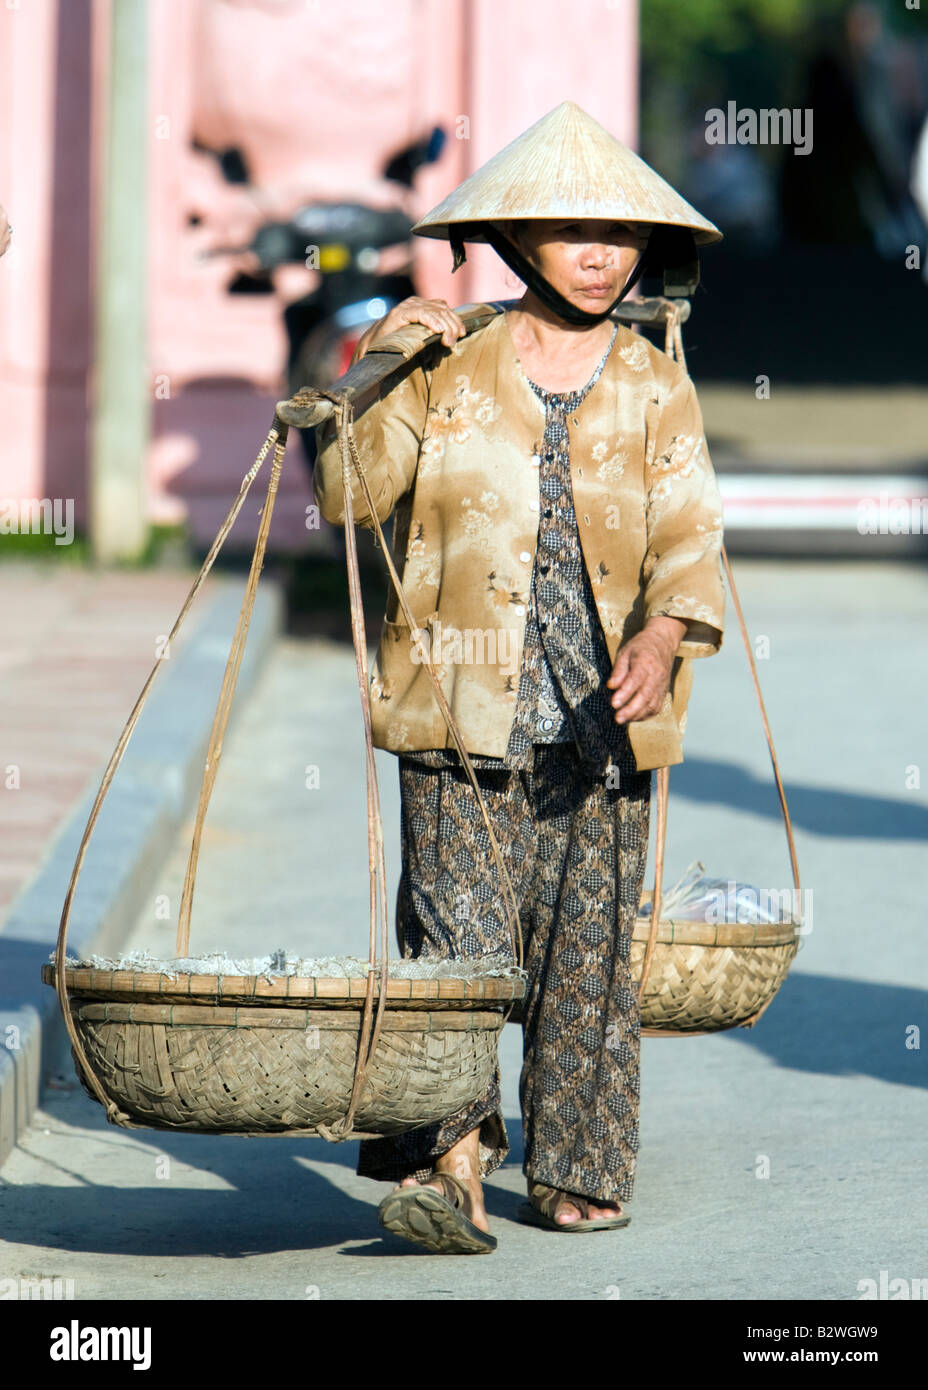 Chapeau conique femme avec du charbon dans le panier de l'épaule vue Pont  couvert japonais Hoi An Vietnam Photo Stock - Alamy